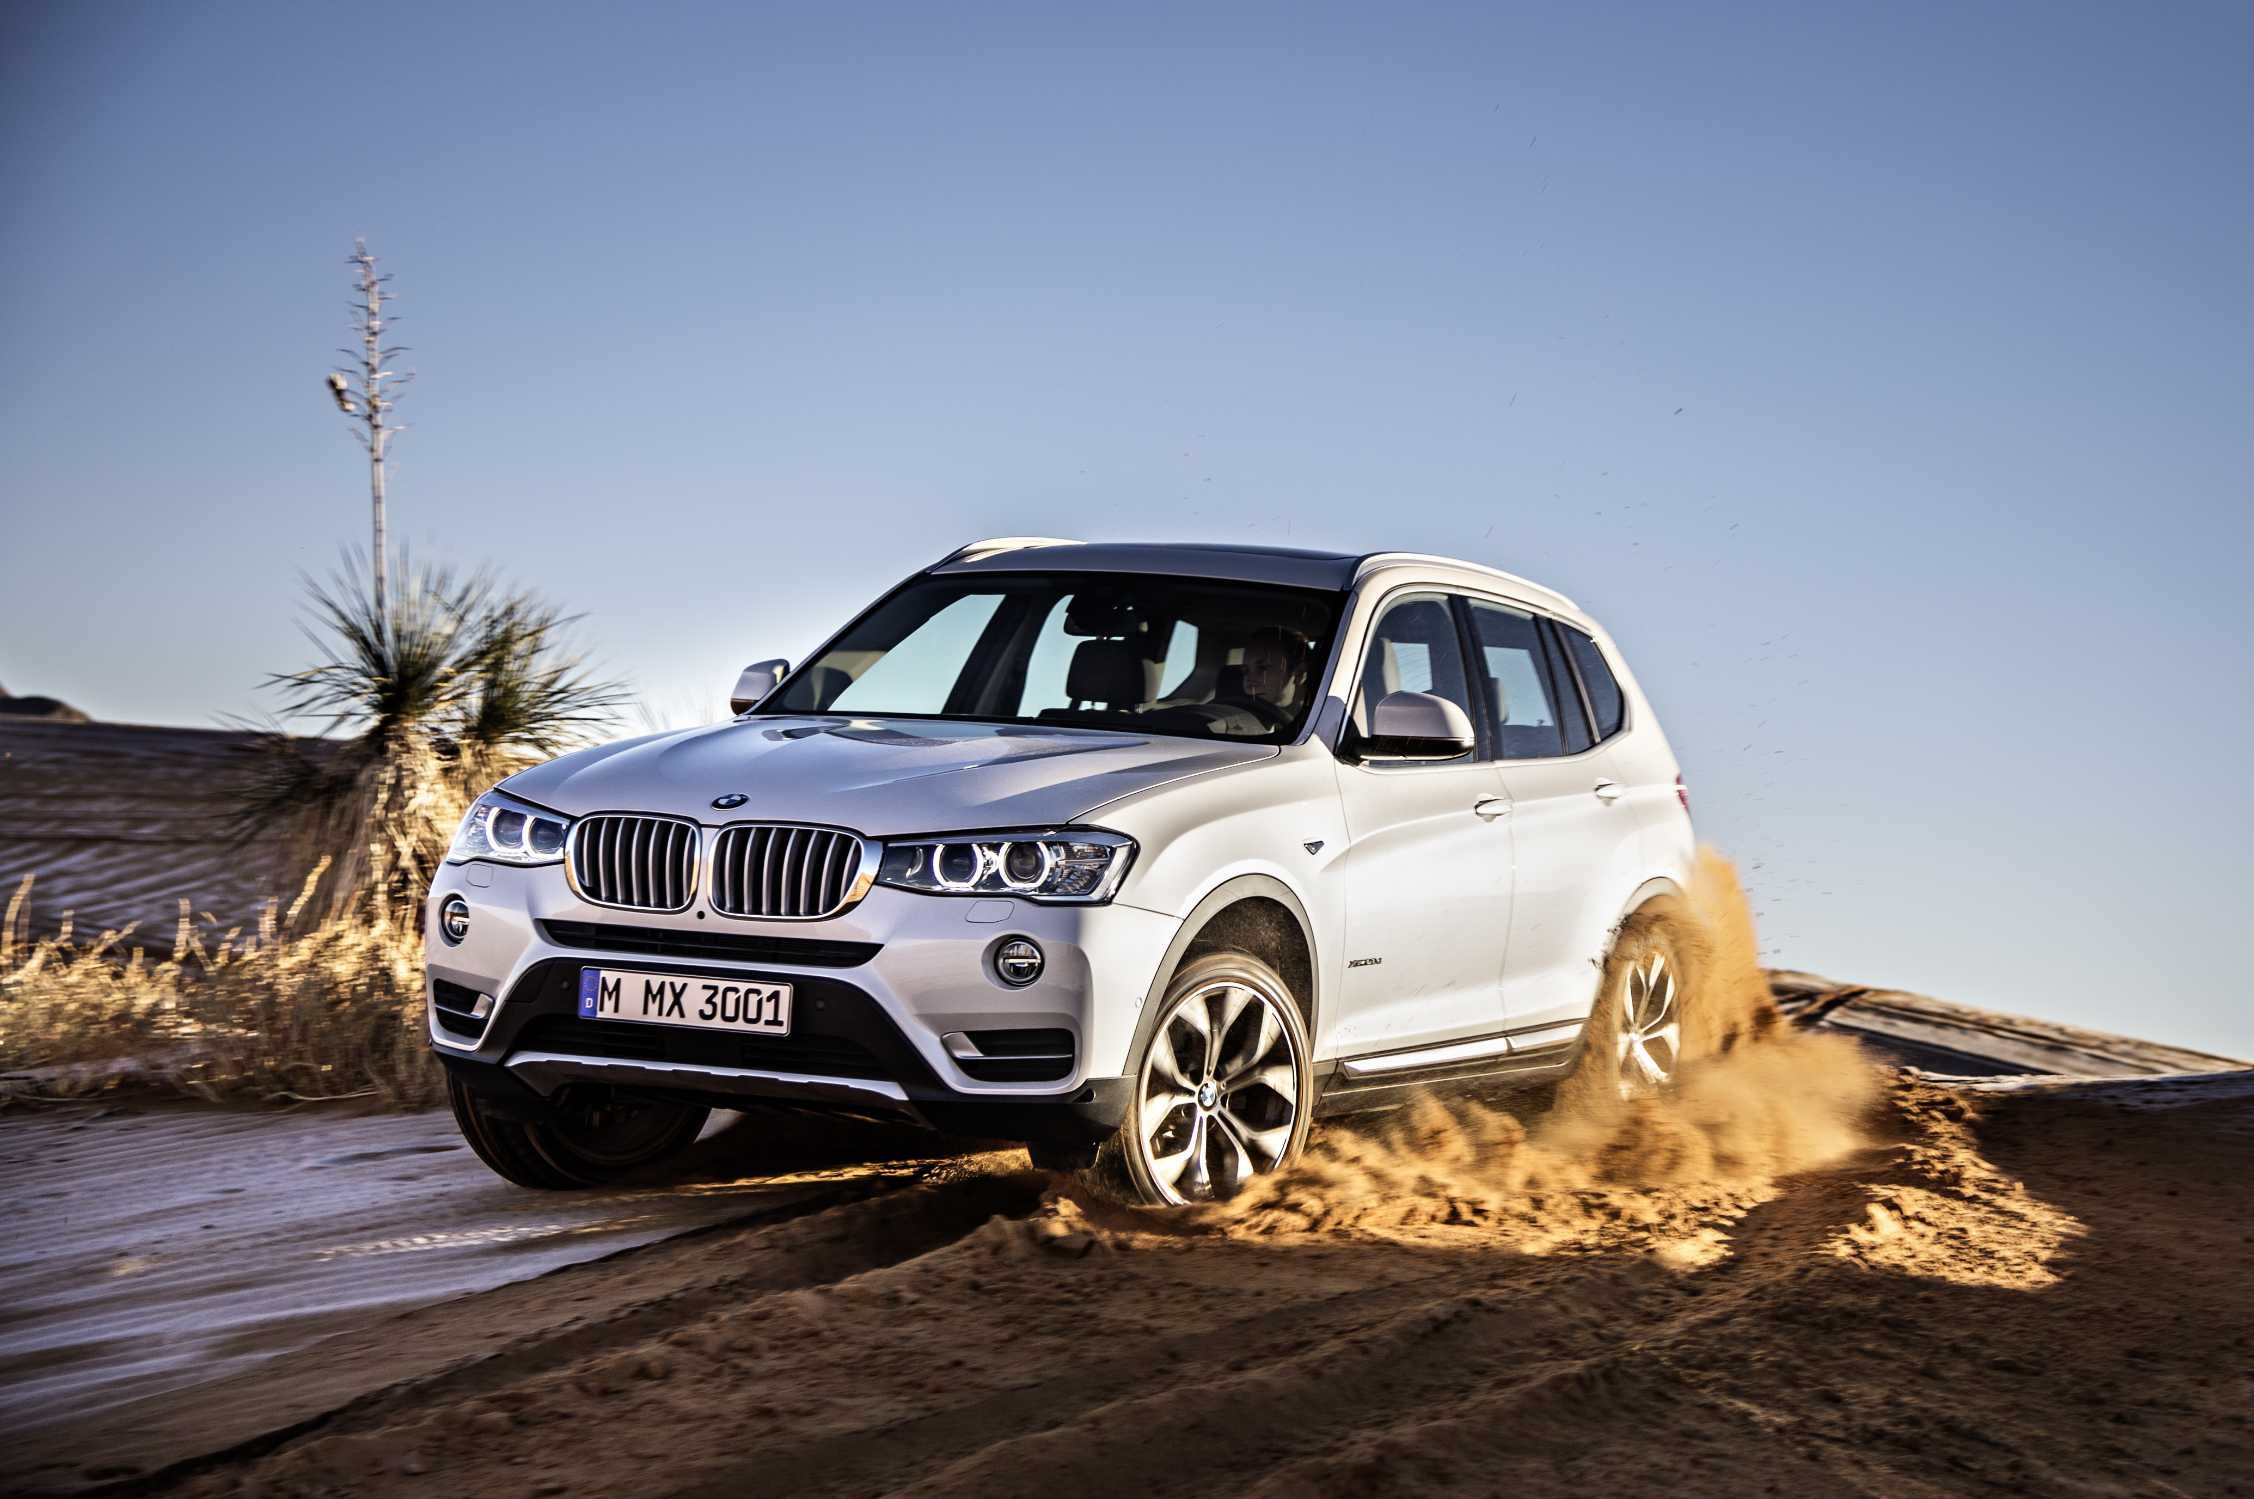 BMW X3 2015, Automotive elegance, Dynamic performance, High-resolution marvel, 2260x1500 HD Desktop